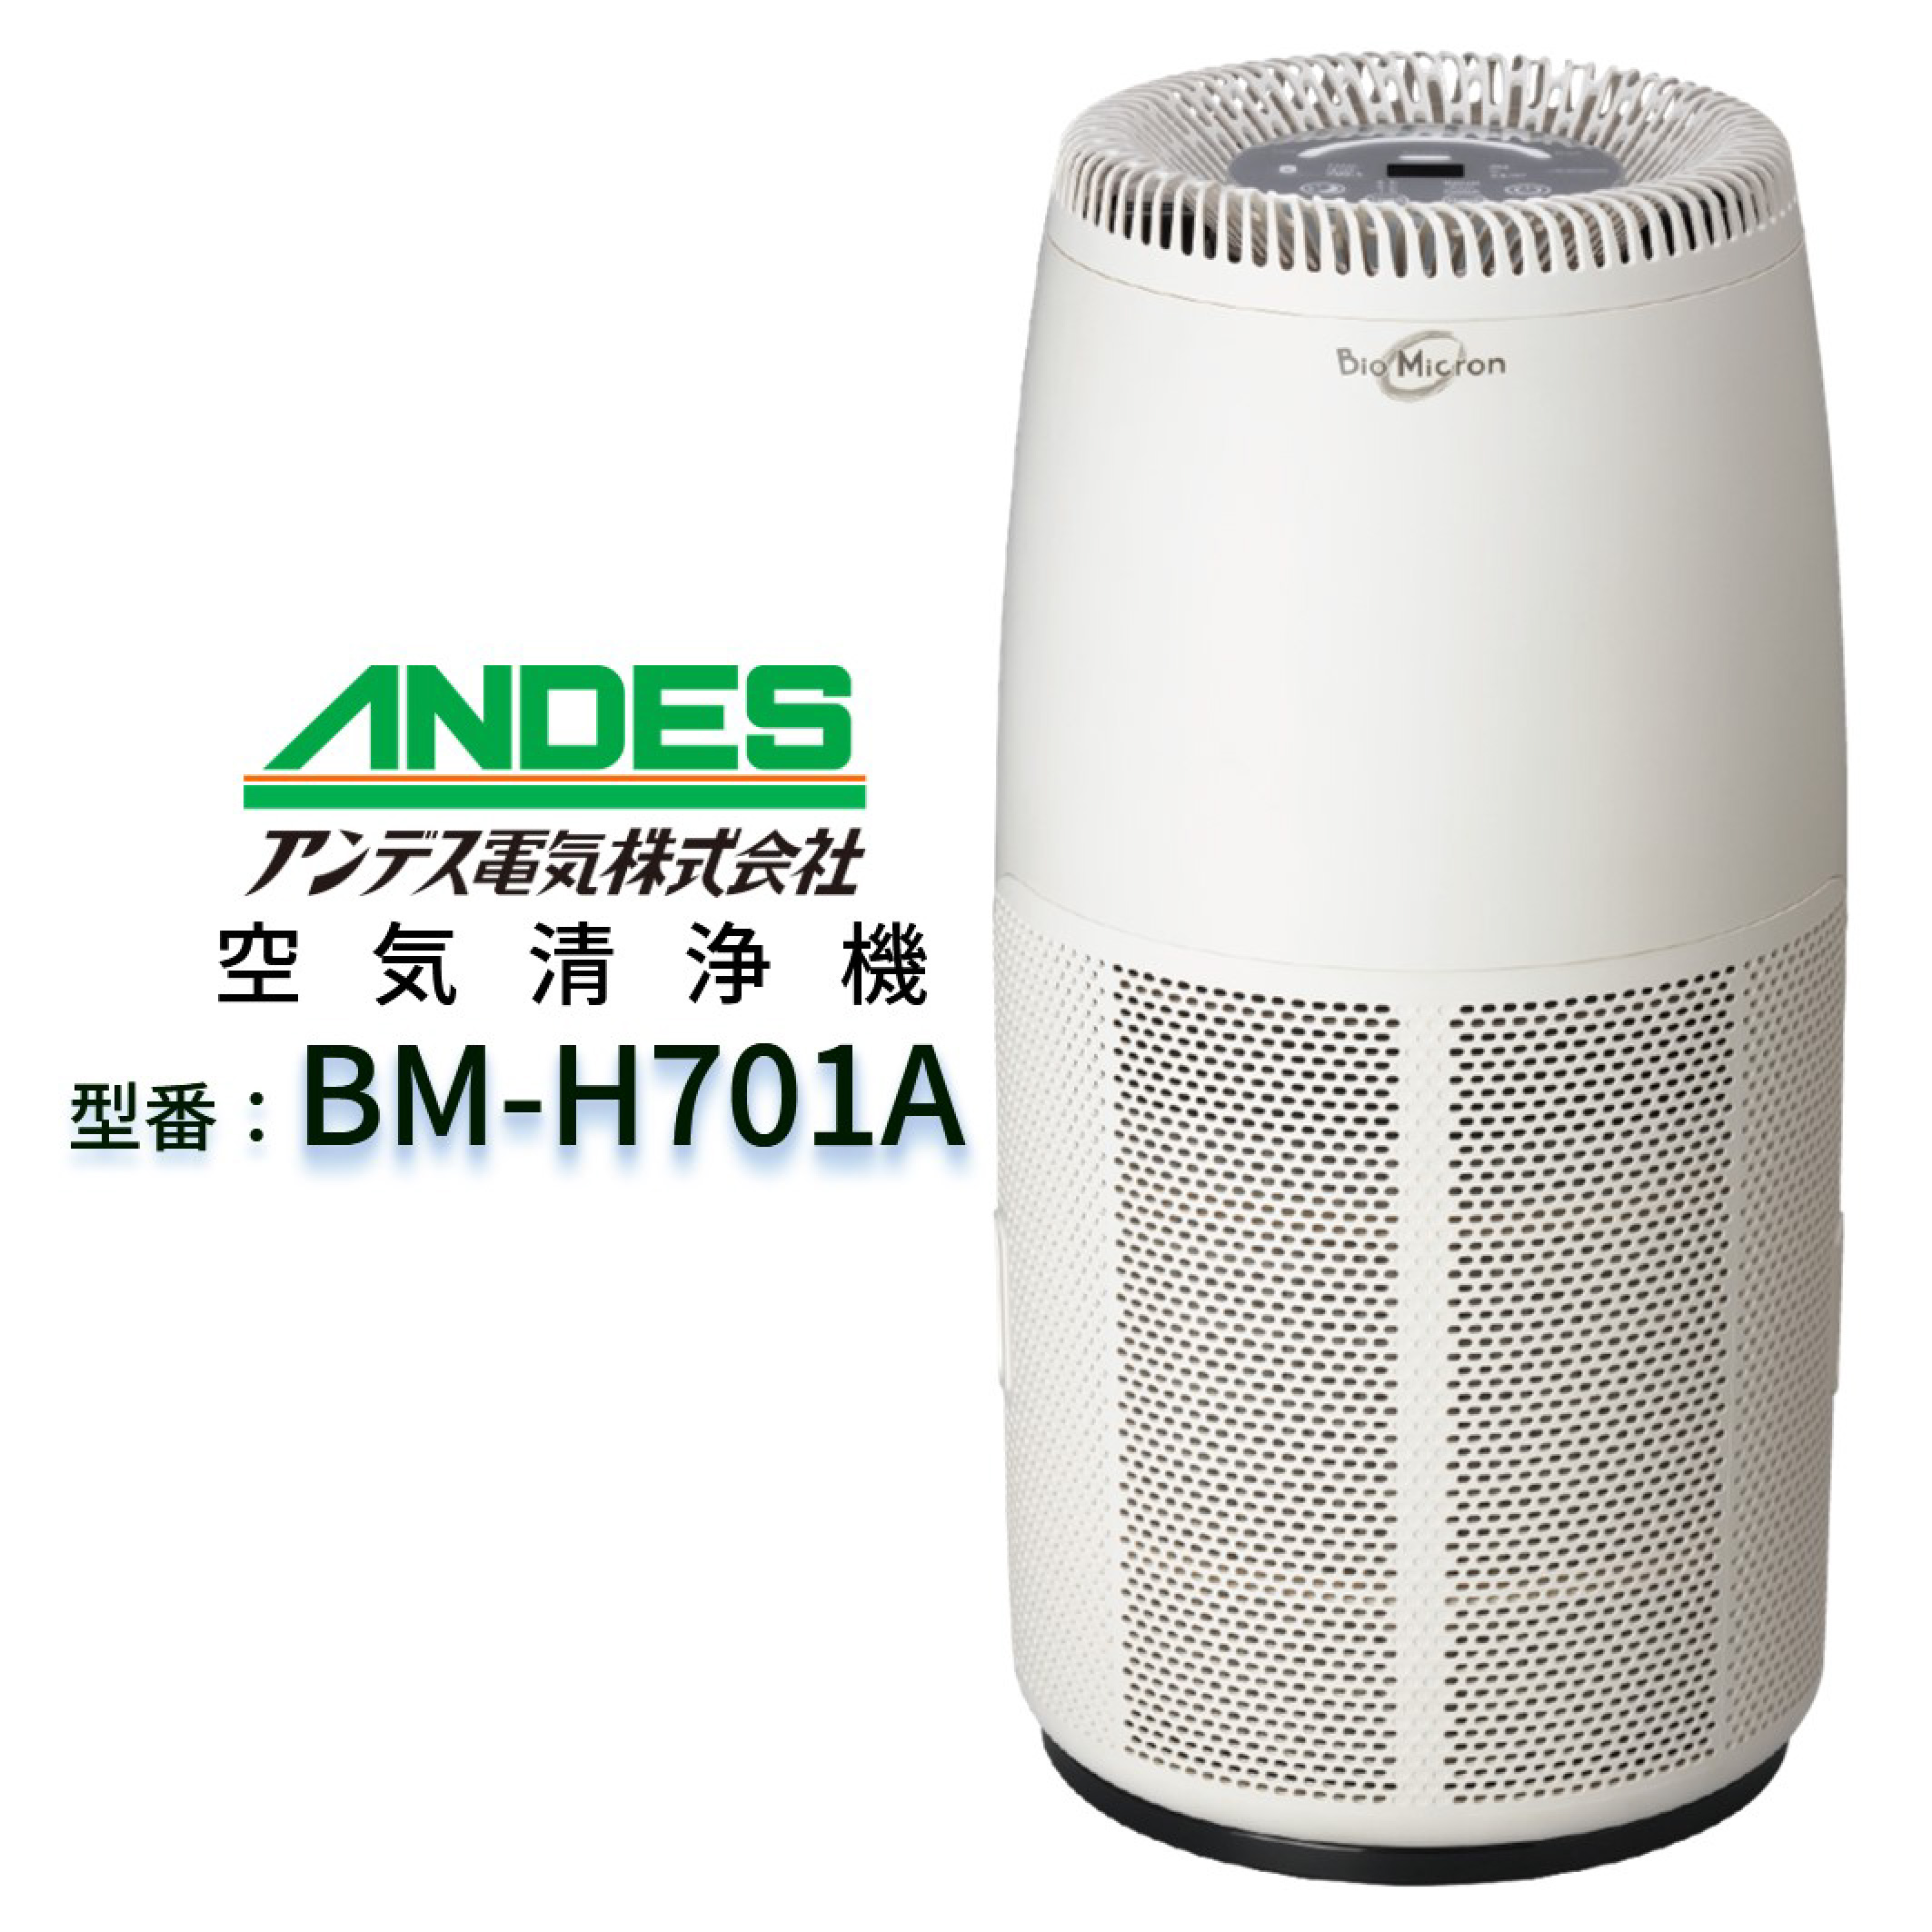 商品内容本体電源ケーブルアンデス ANDES BM-H101A バイオミクロン 空気清浄機